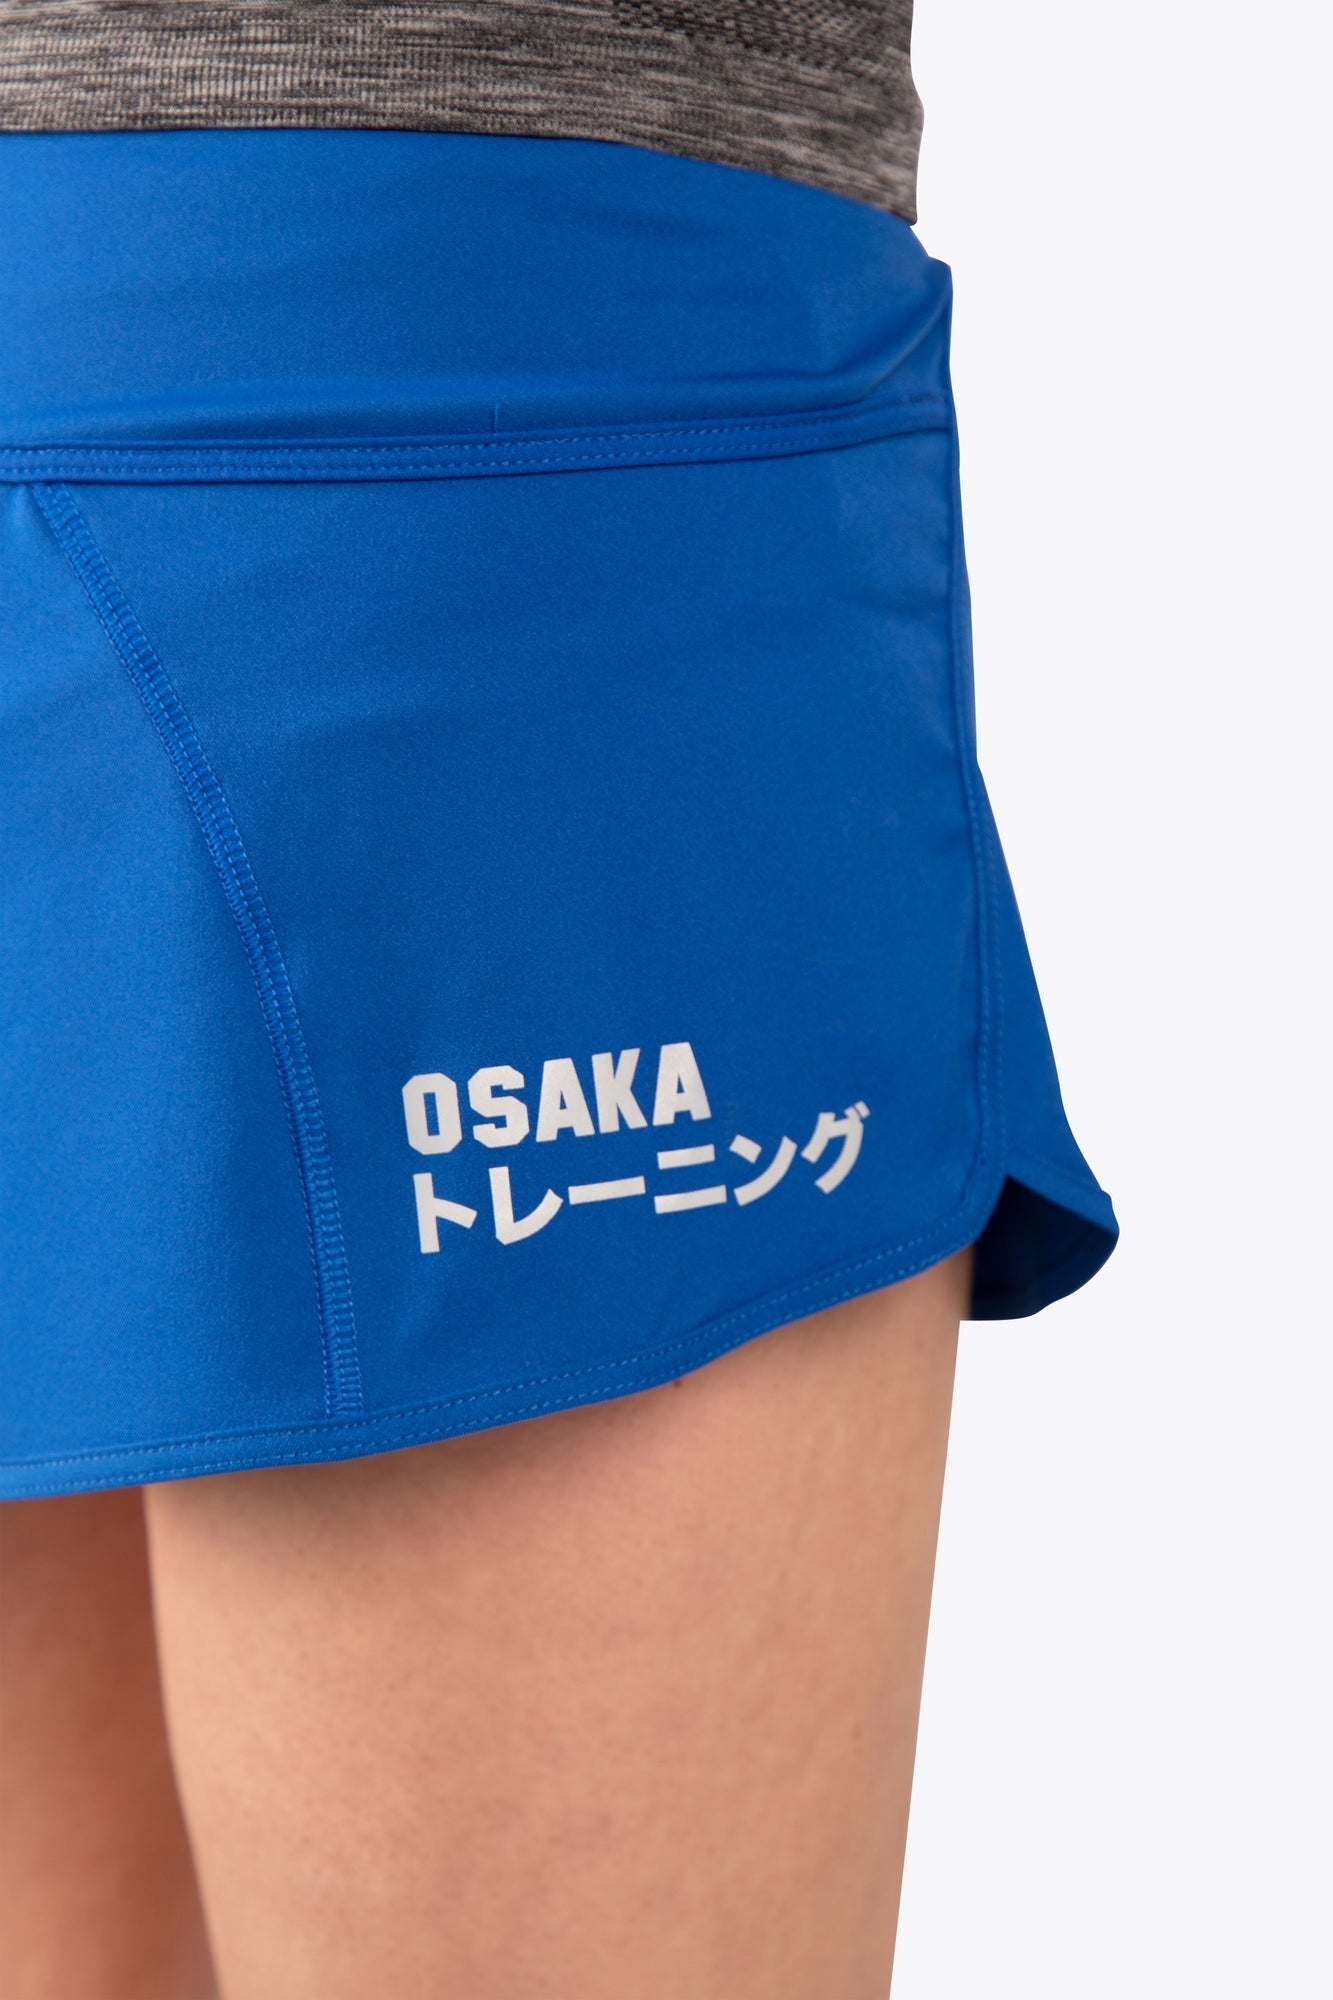 Osaka's Vrouwen Korte Training Broek (Royal Blauw)